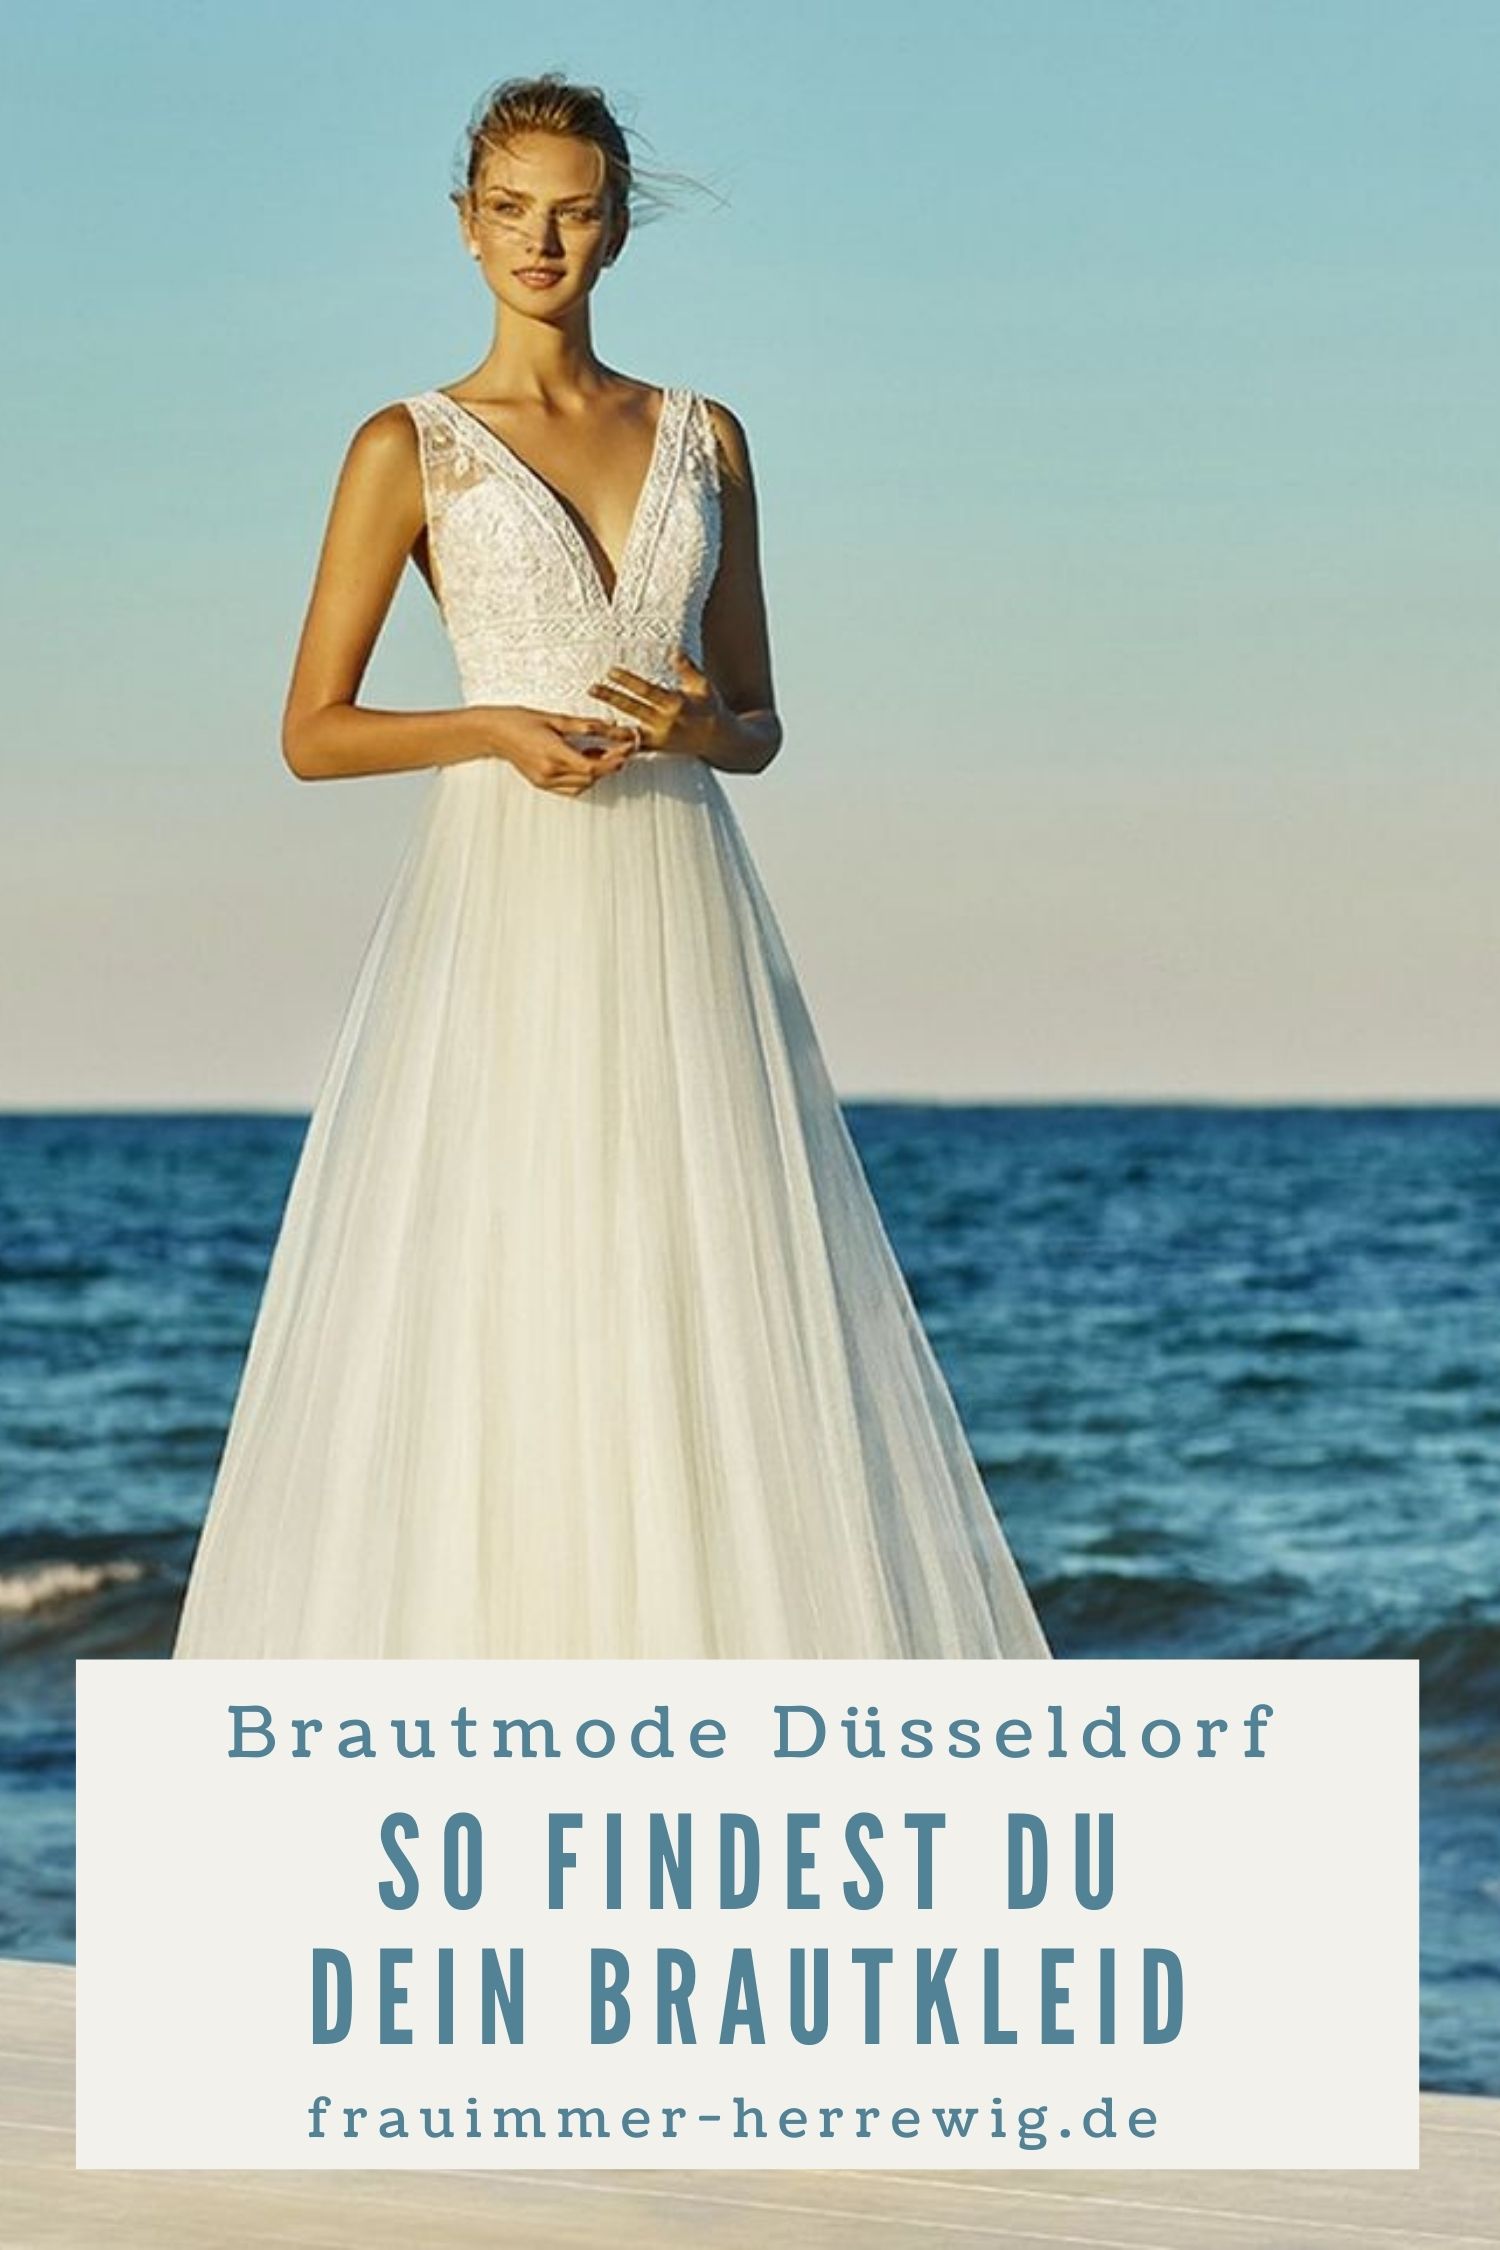 Brautkleider duesseldorf – gesehen bei frauimmer-herrewig.de